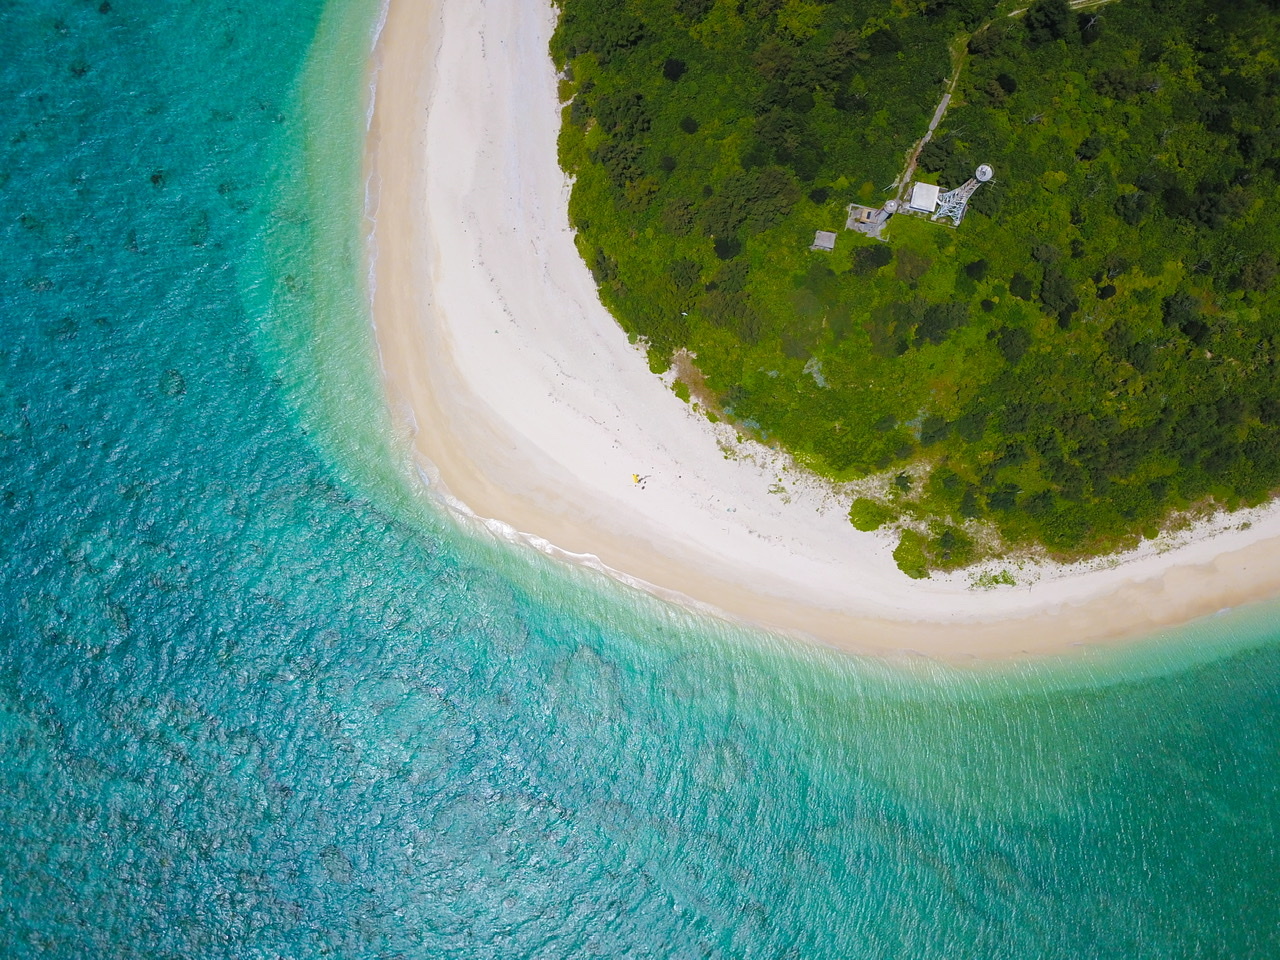 連載 沖縄で透明度抜群のビーチランキング7選 場の絶景ビーチも登場 暮らし の